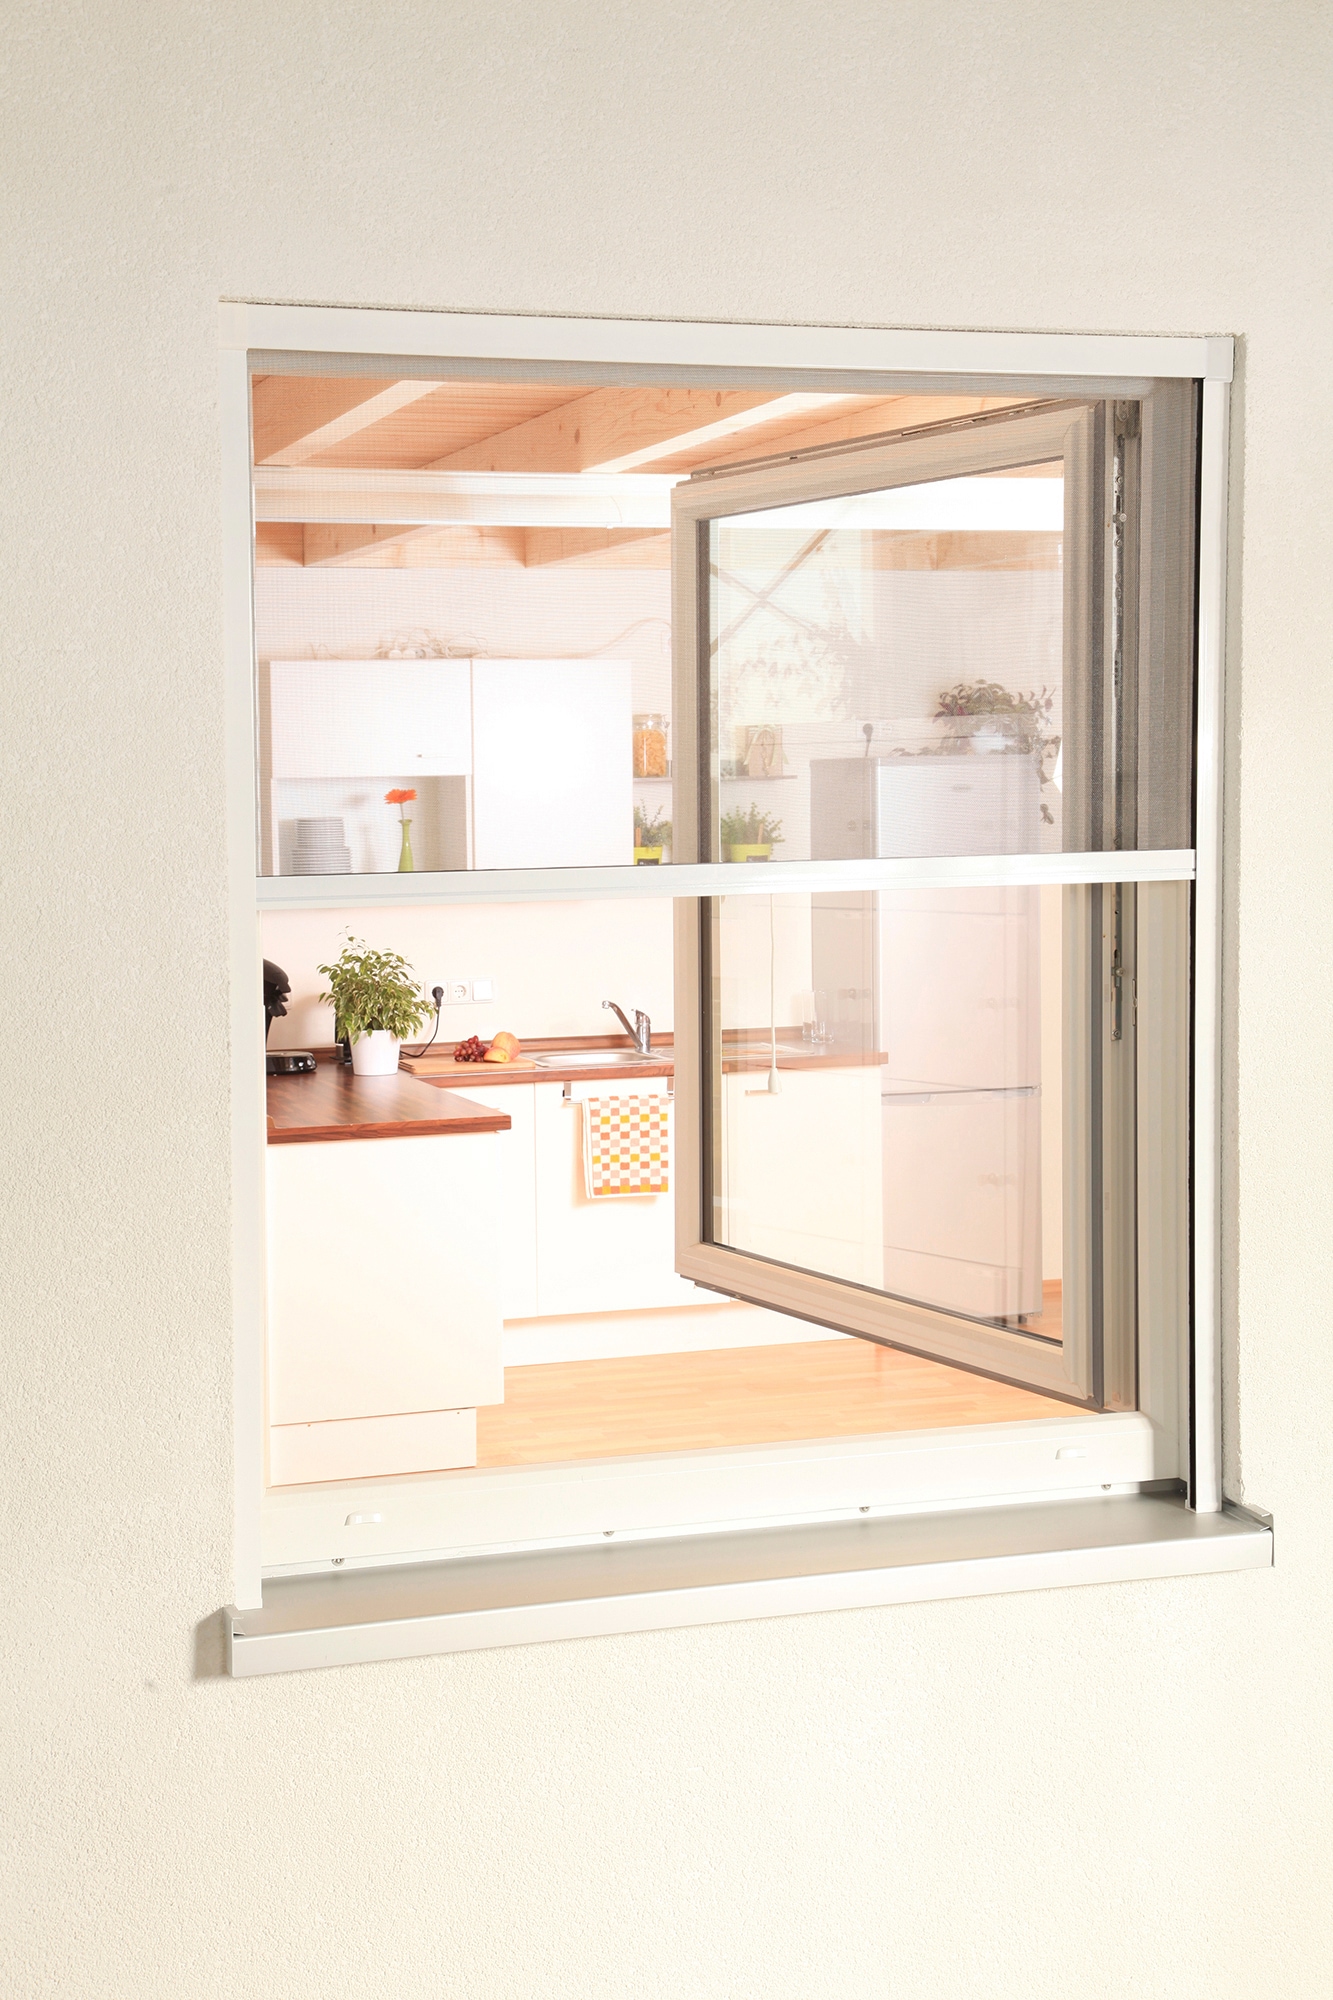 hecht international Insektenschutzrollo »SMART«, transparent, für Fenster, weiß/anthrazit, BxH: 80x160 cm